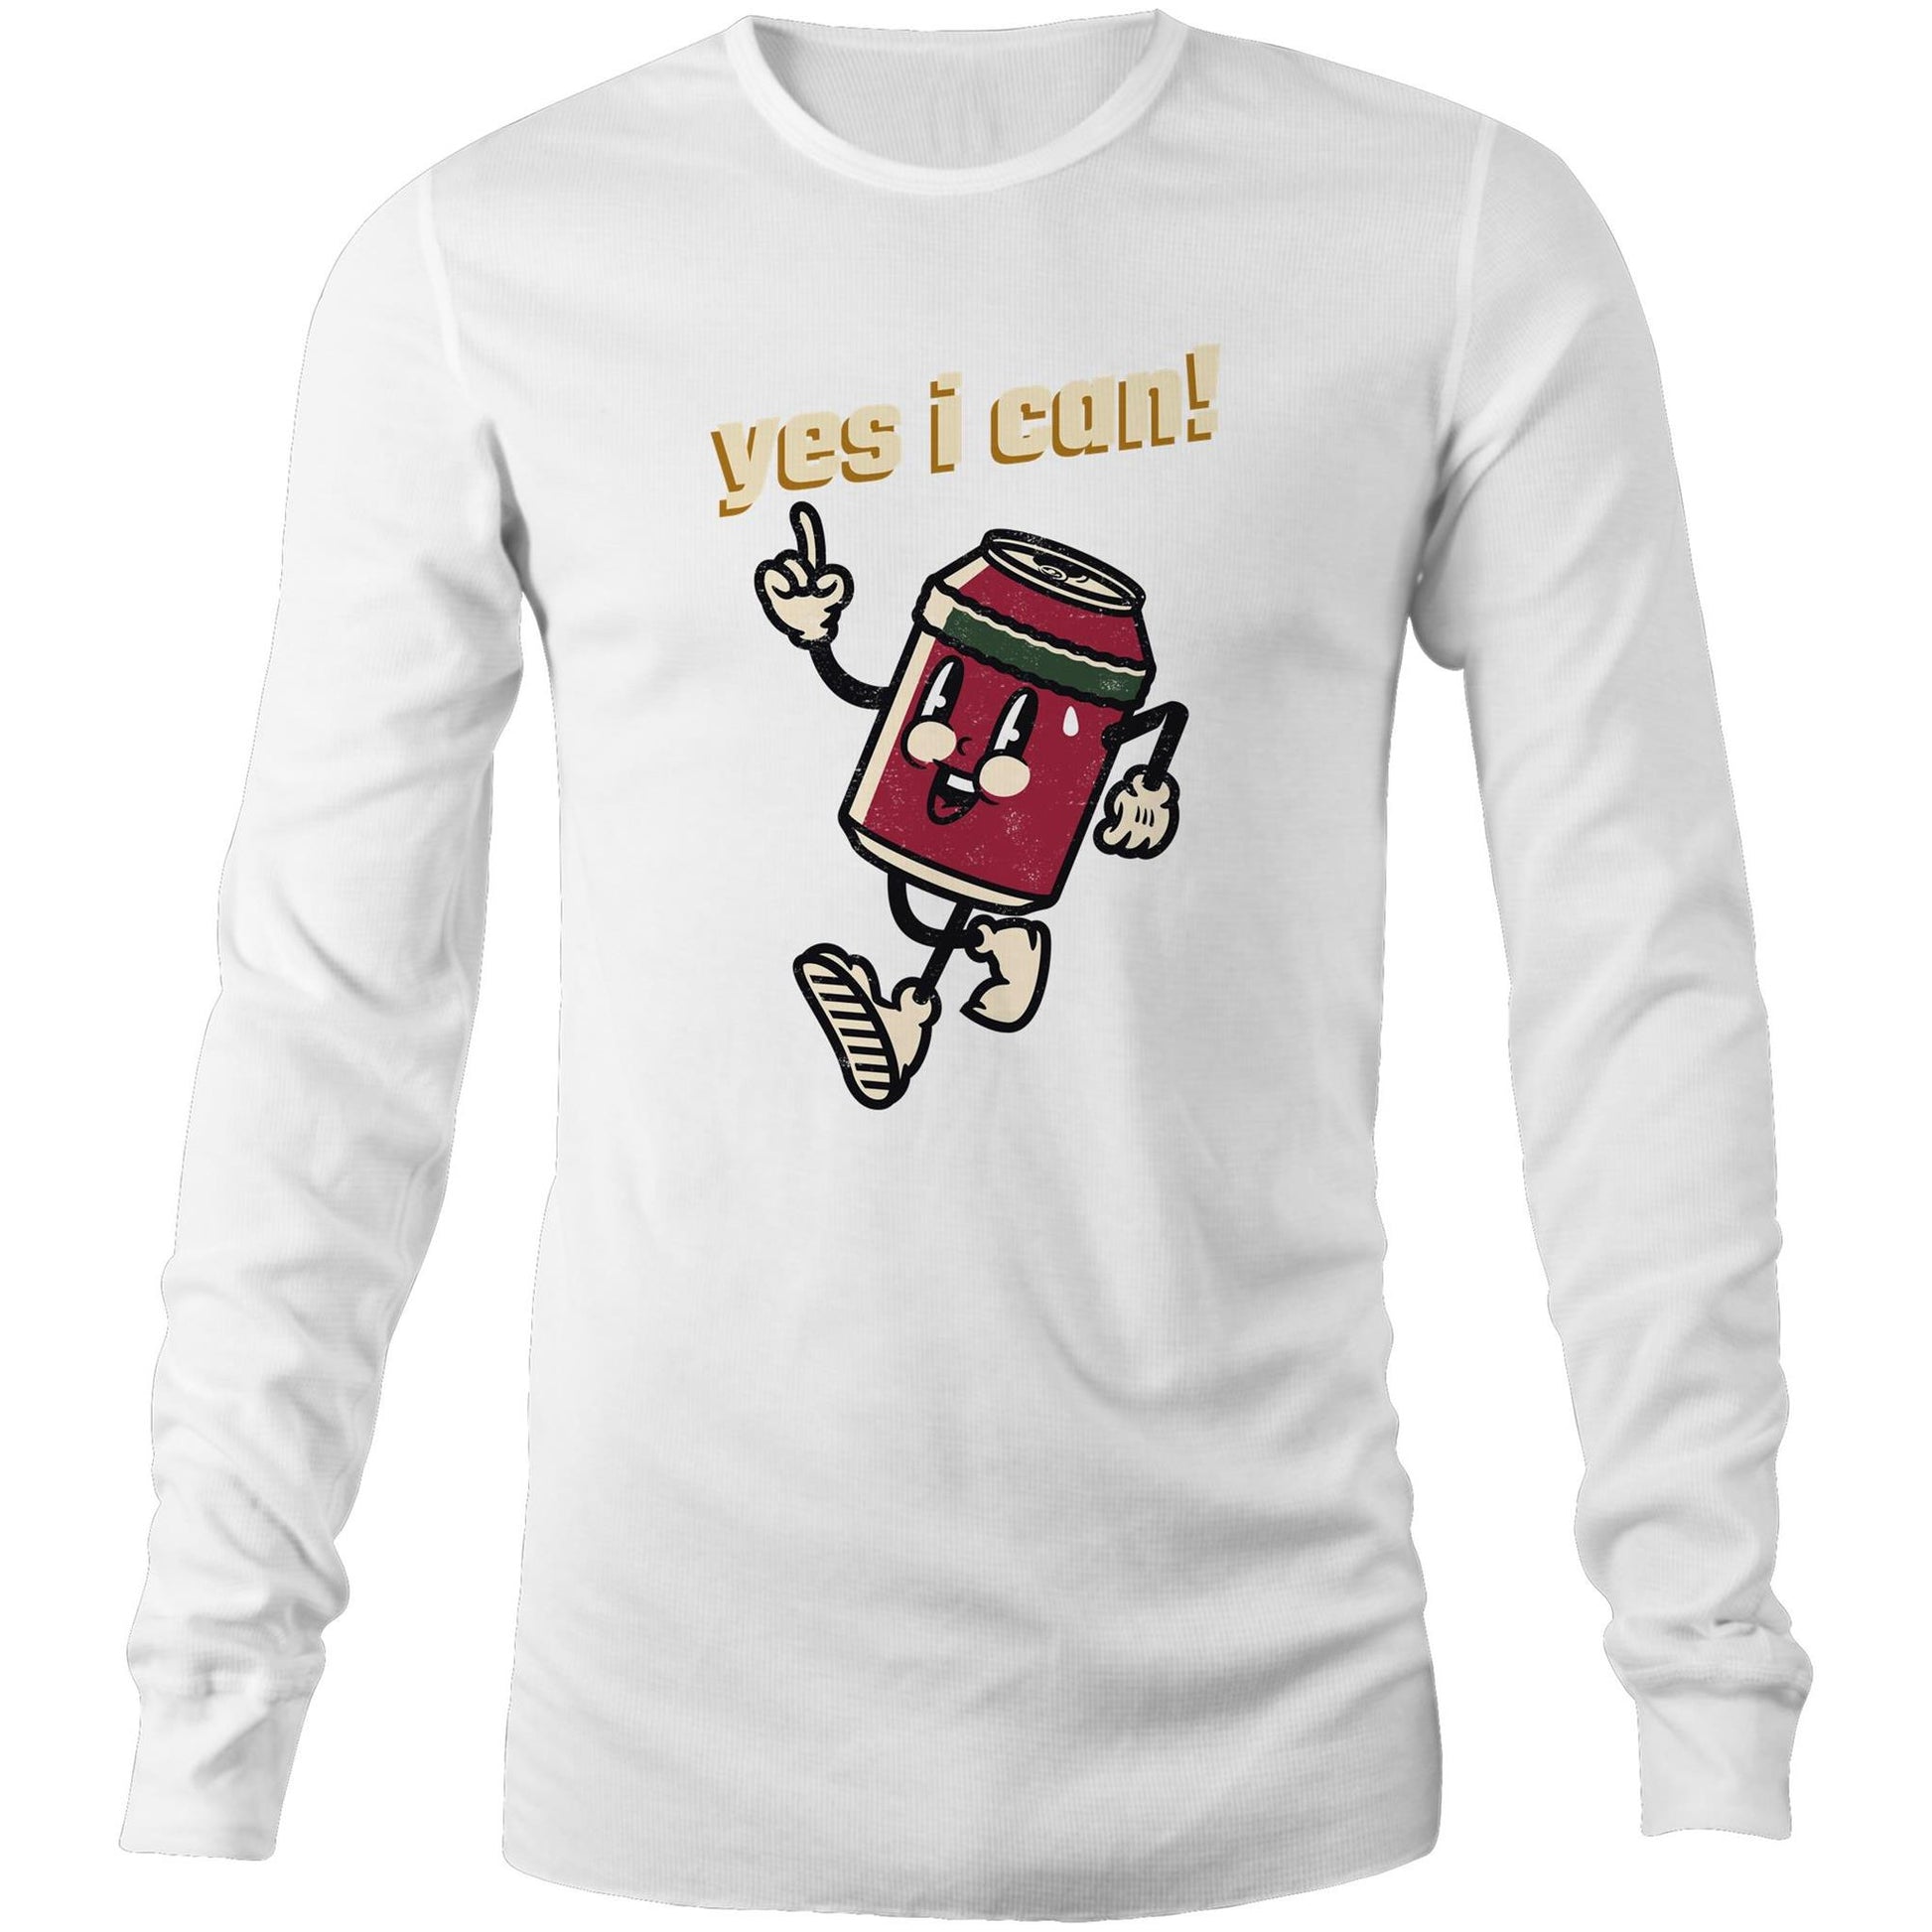 Yes I Can! - Long Sleeve T-Shirt White Unisex Long Sleeve T-shirt Motivation Retro